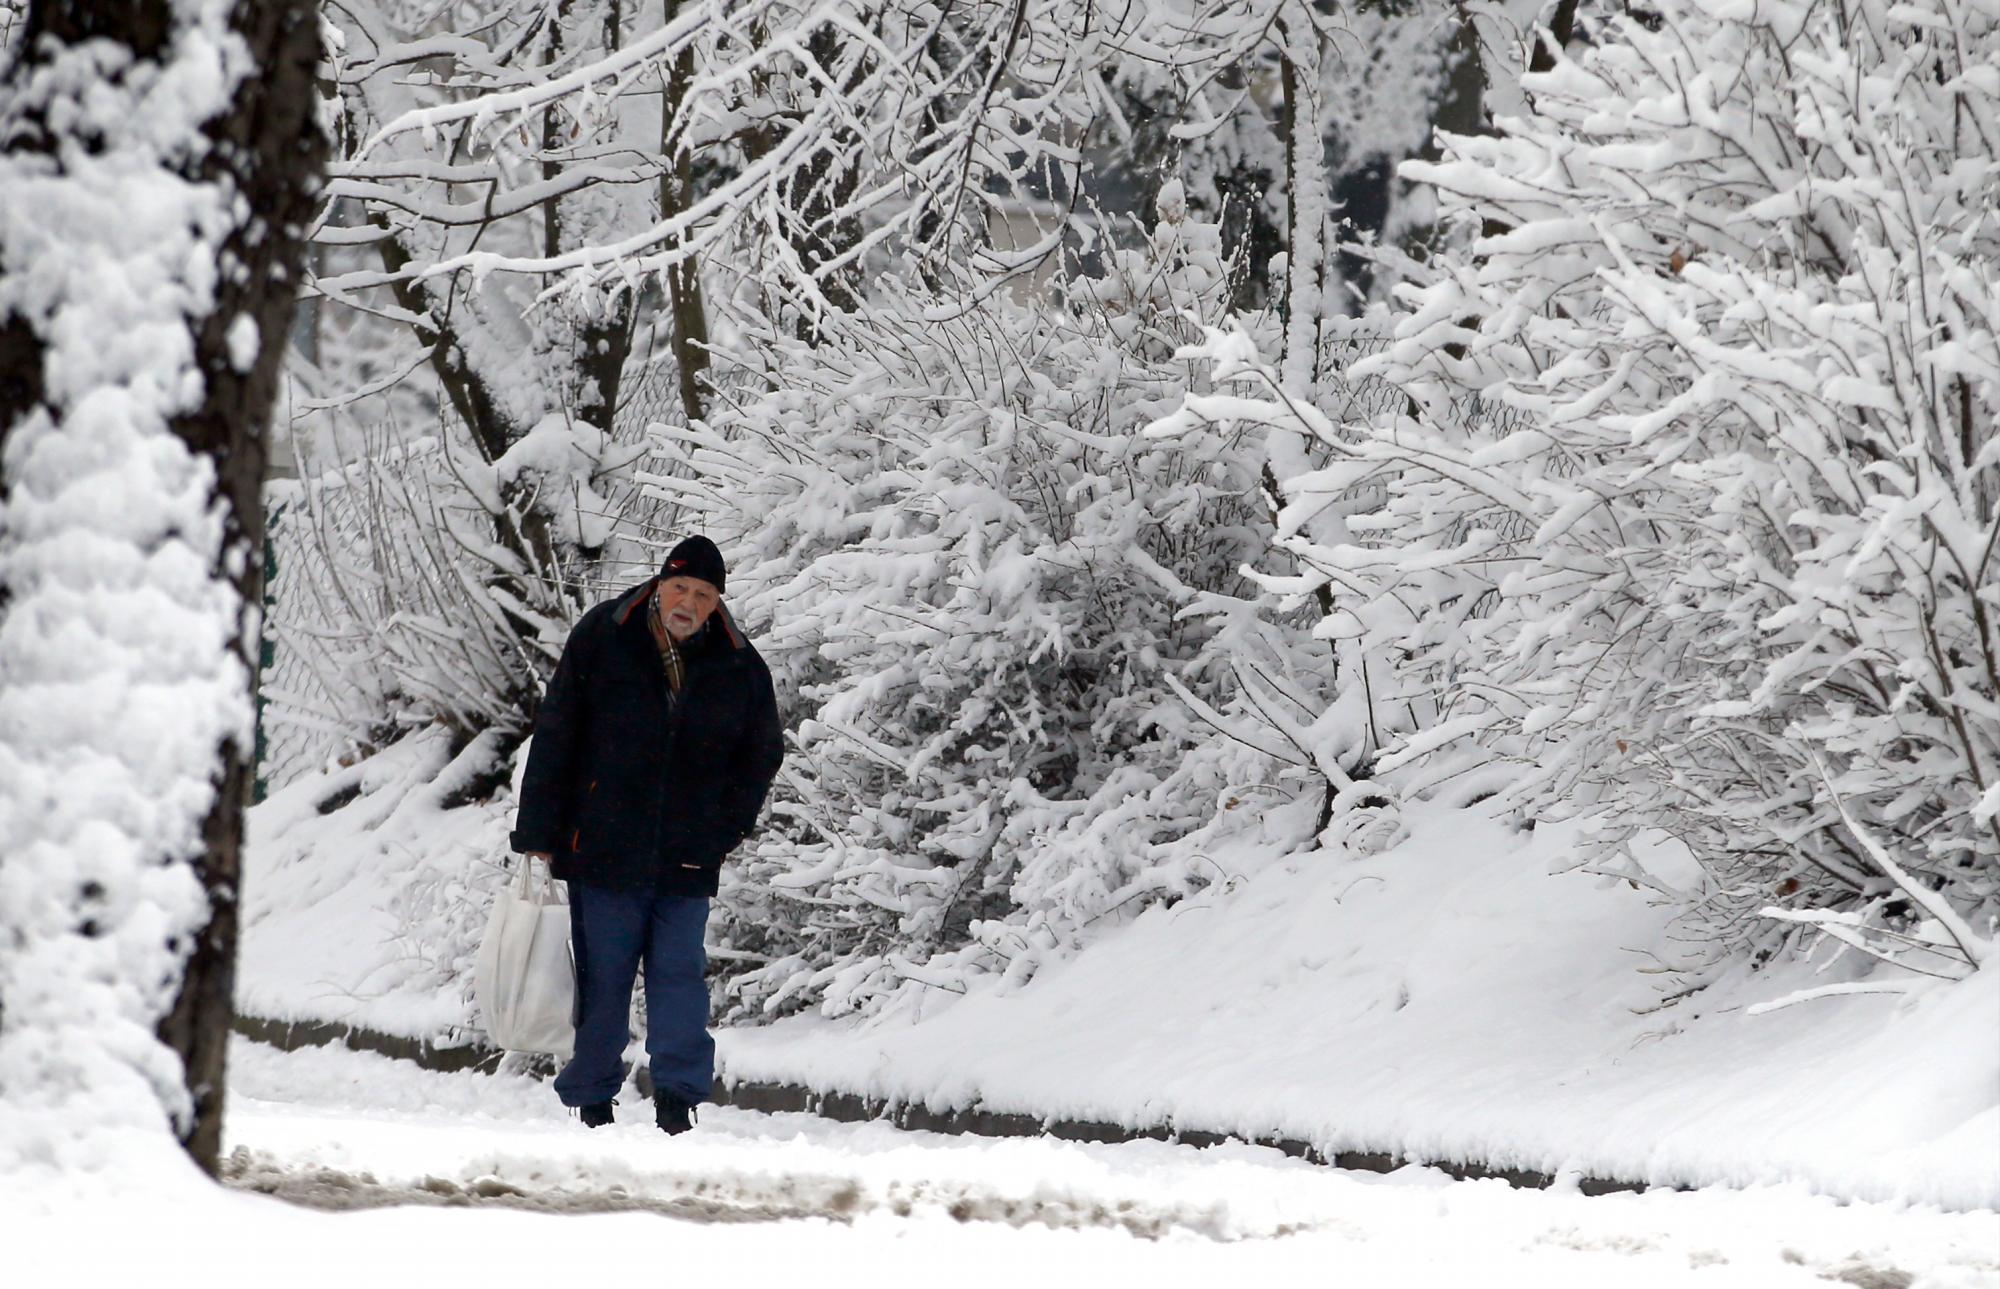 Un hombre camina por una calle cubierta de nieve en Belgrado, Serbia, el jueves 24 de enero de 2019. Los meteorólogos predicen fuertes nevadas y temperaturas bajo cero en Serbia durante la semana.